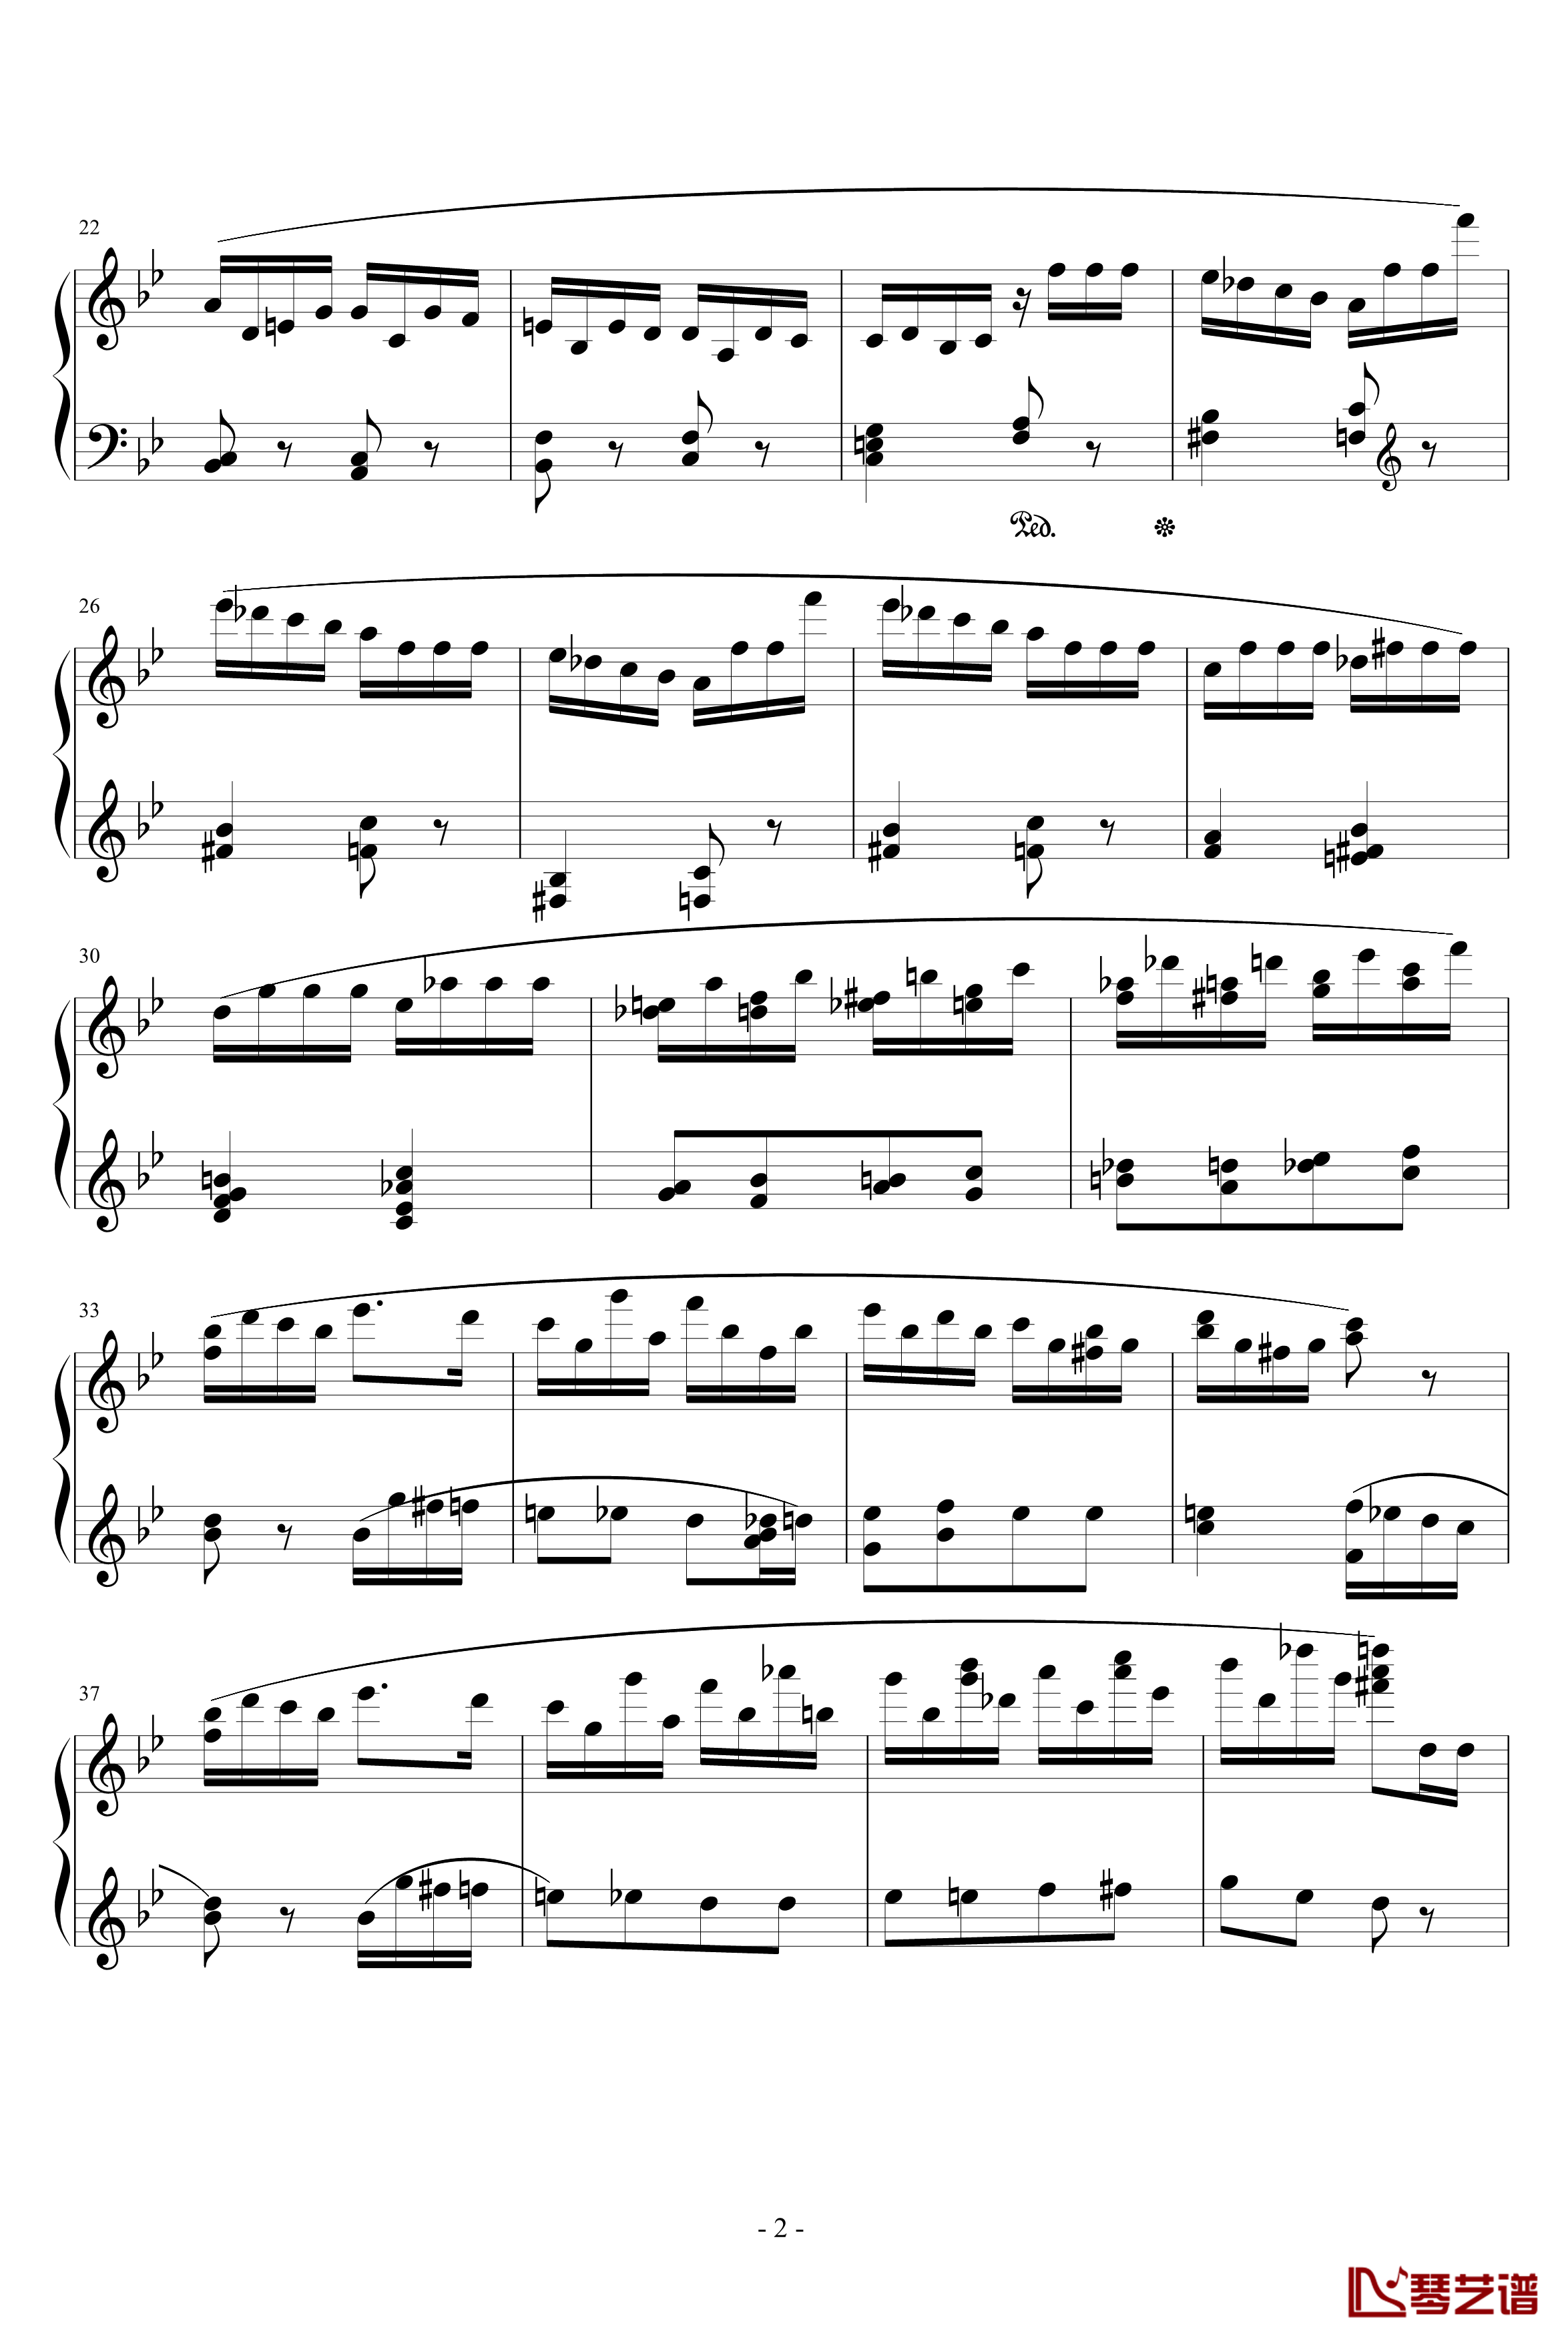 胡桃夹子序曲钢琴谱-柴科夫斯基-Peter Ilyich Tchaikovsky2